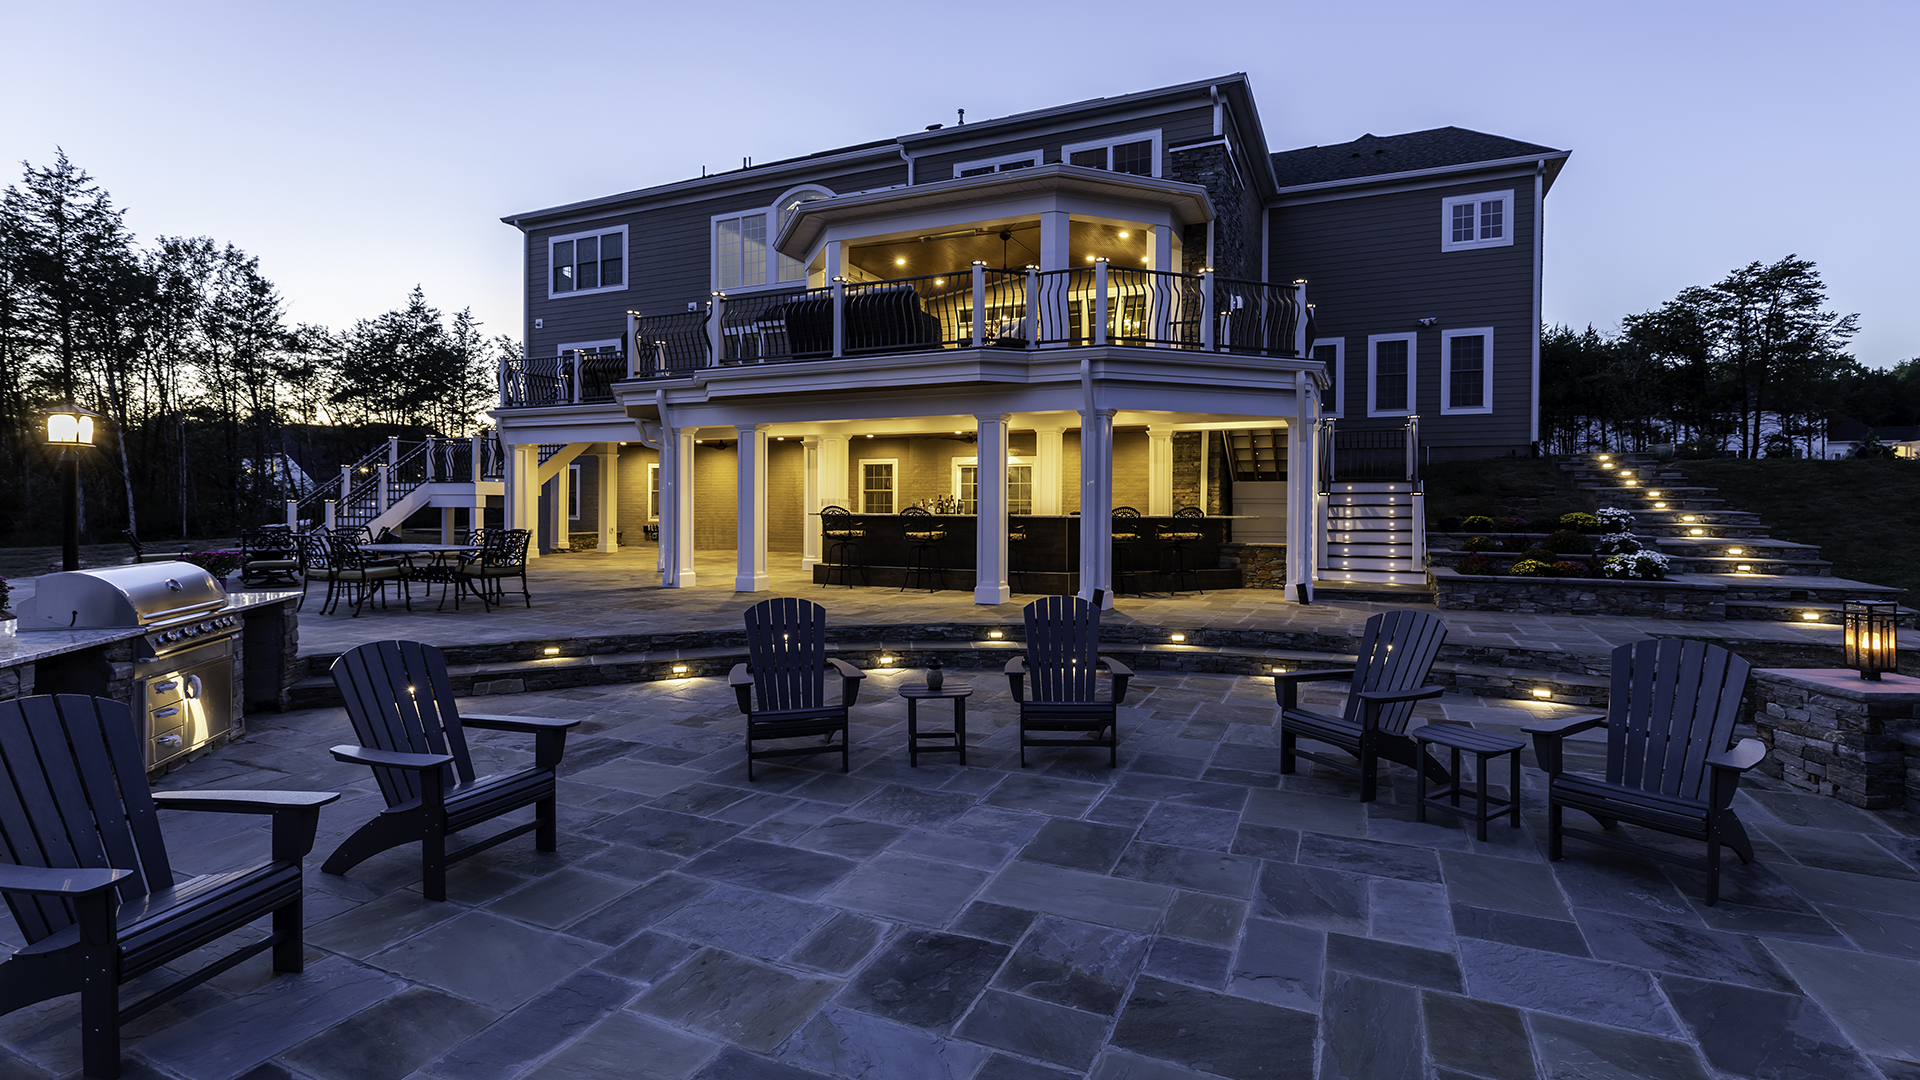 2020 NARI Capital CotY Merit Award Winner, Residential Landscape Design/ Outdoor Living over $250,000